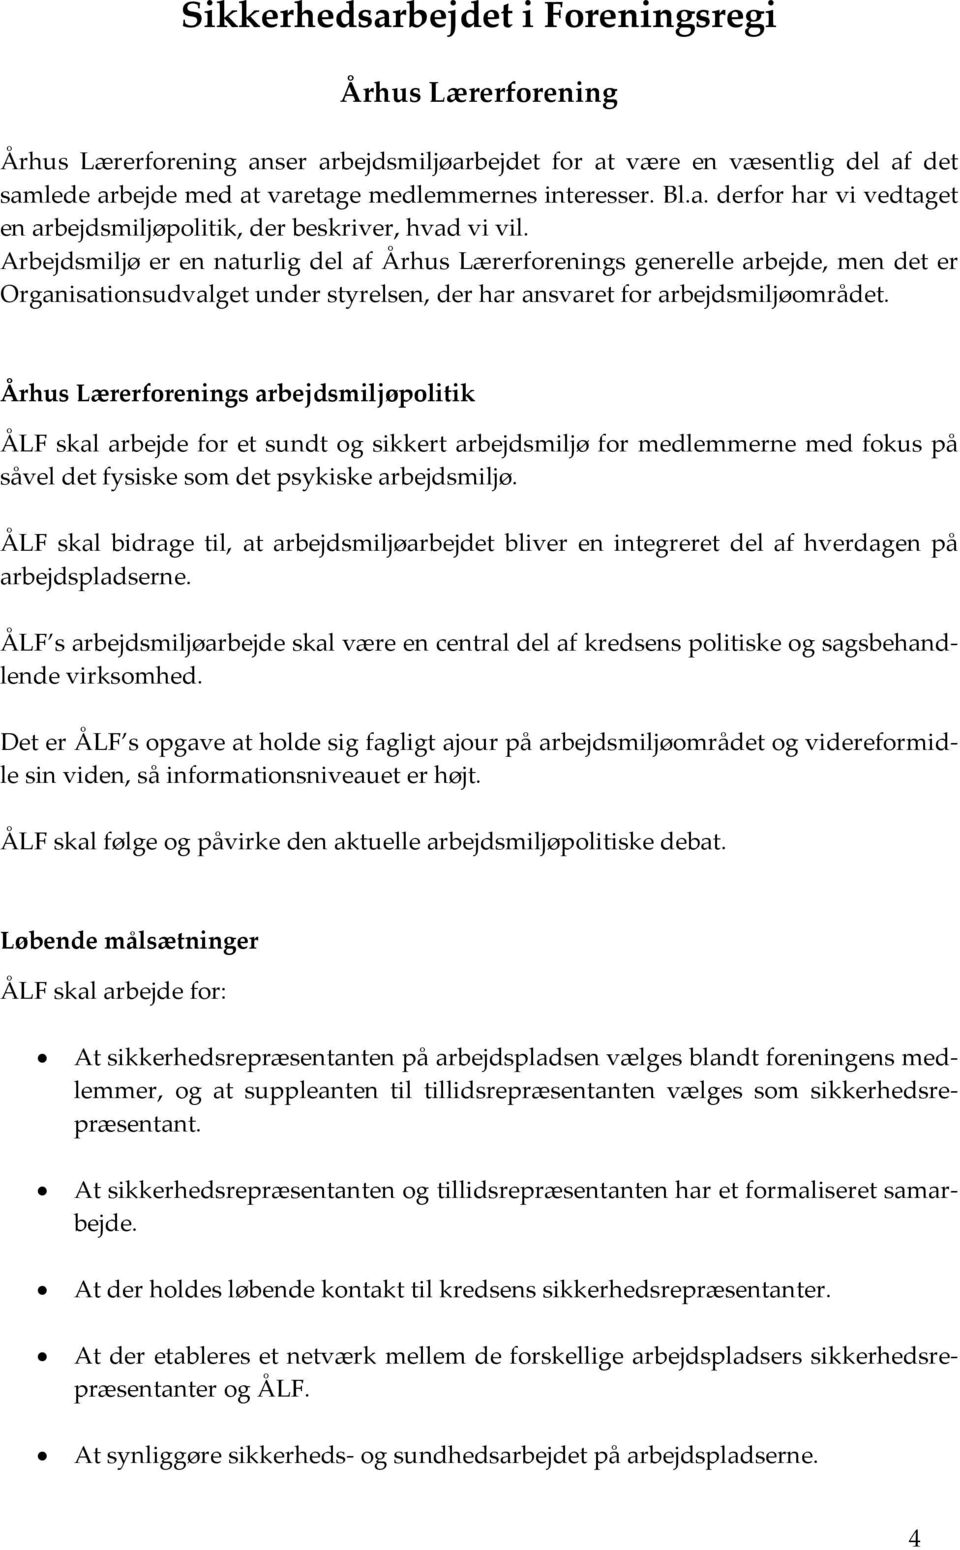 Århus Lærerforenings arbejdsmiljøpolitik ÅLF skal arbejde for et sundt og sikkert arbejdsmiljø for medlemmerne med fokus på såvel det fysiske som det psykiske arbejdsmiljø.